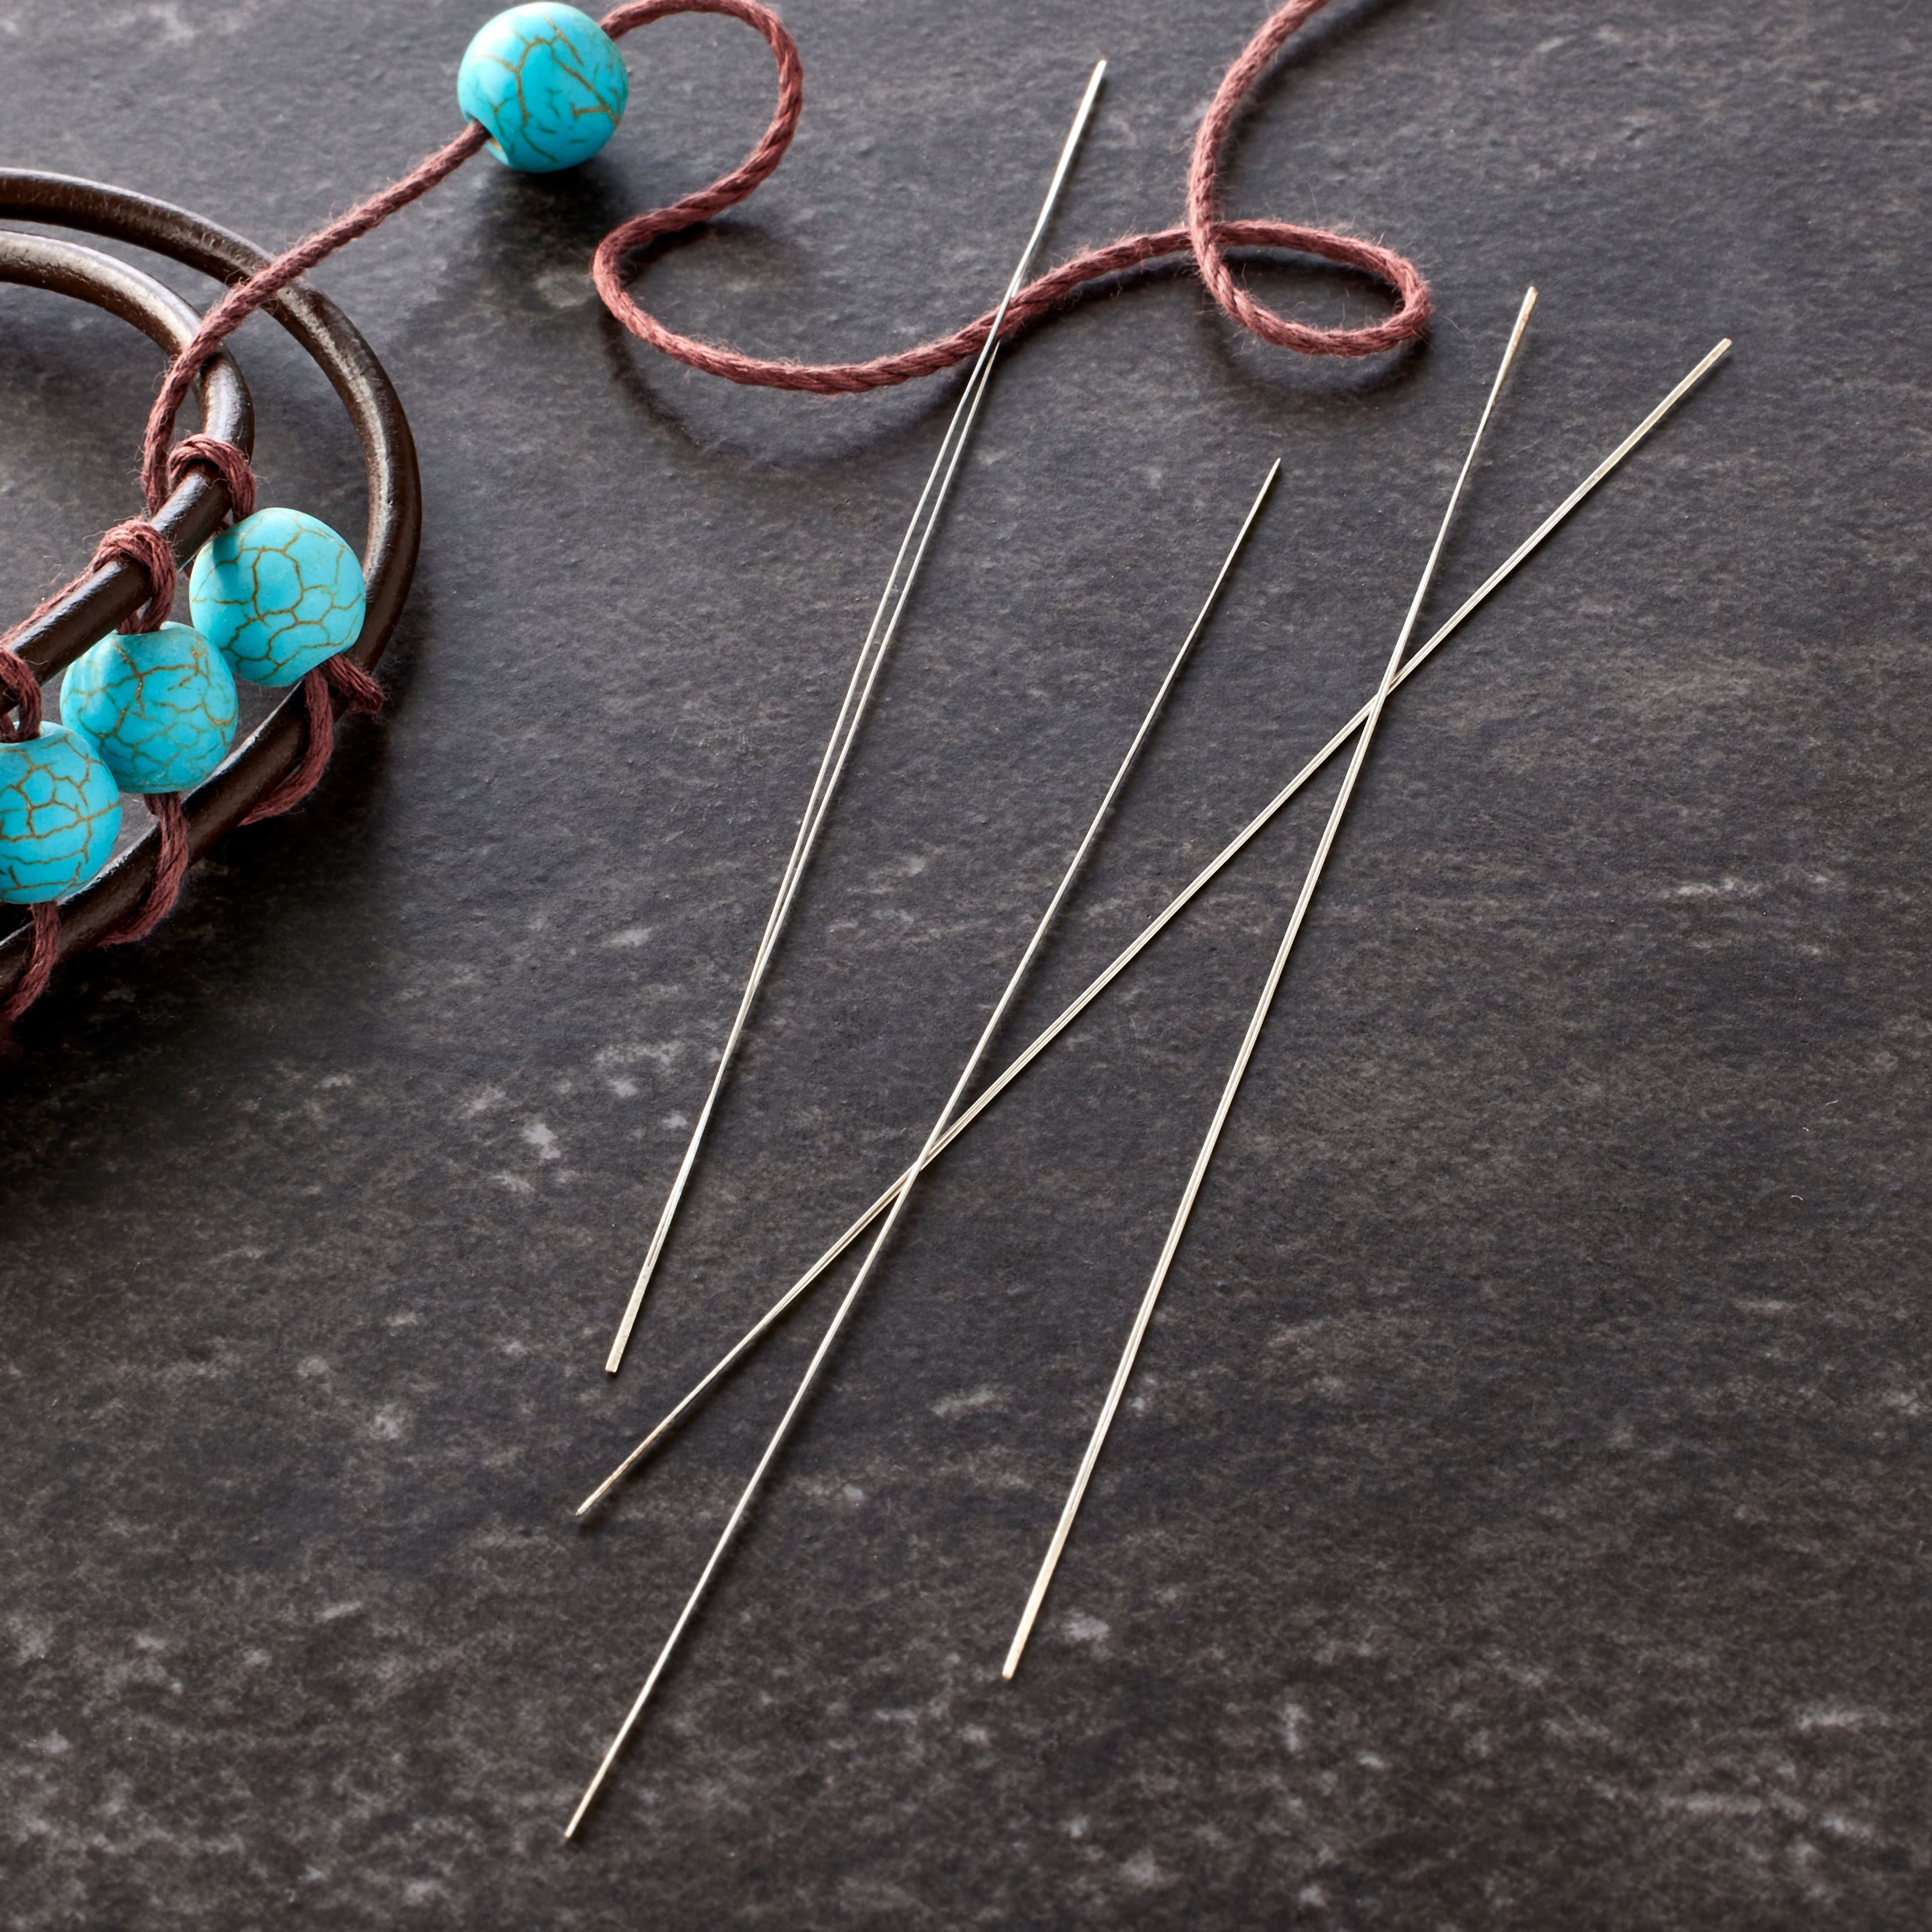 24 Pcs Beading Needles for Jewelry Making, 6 Sizes Big Eye Beading Needles Stain